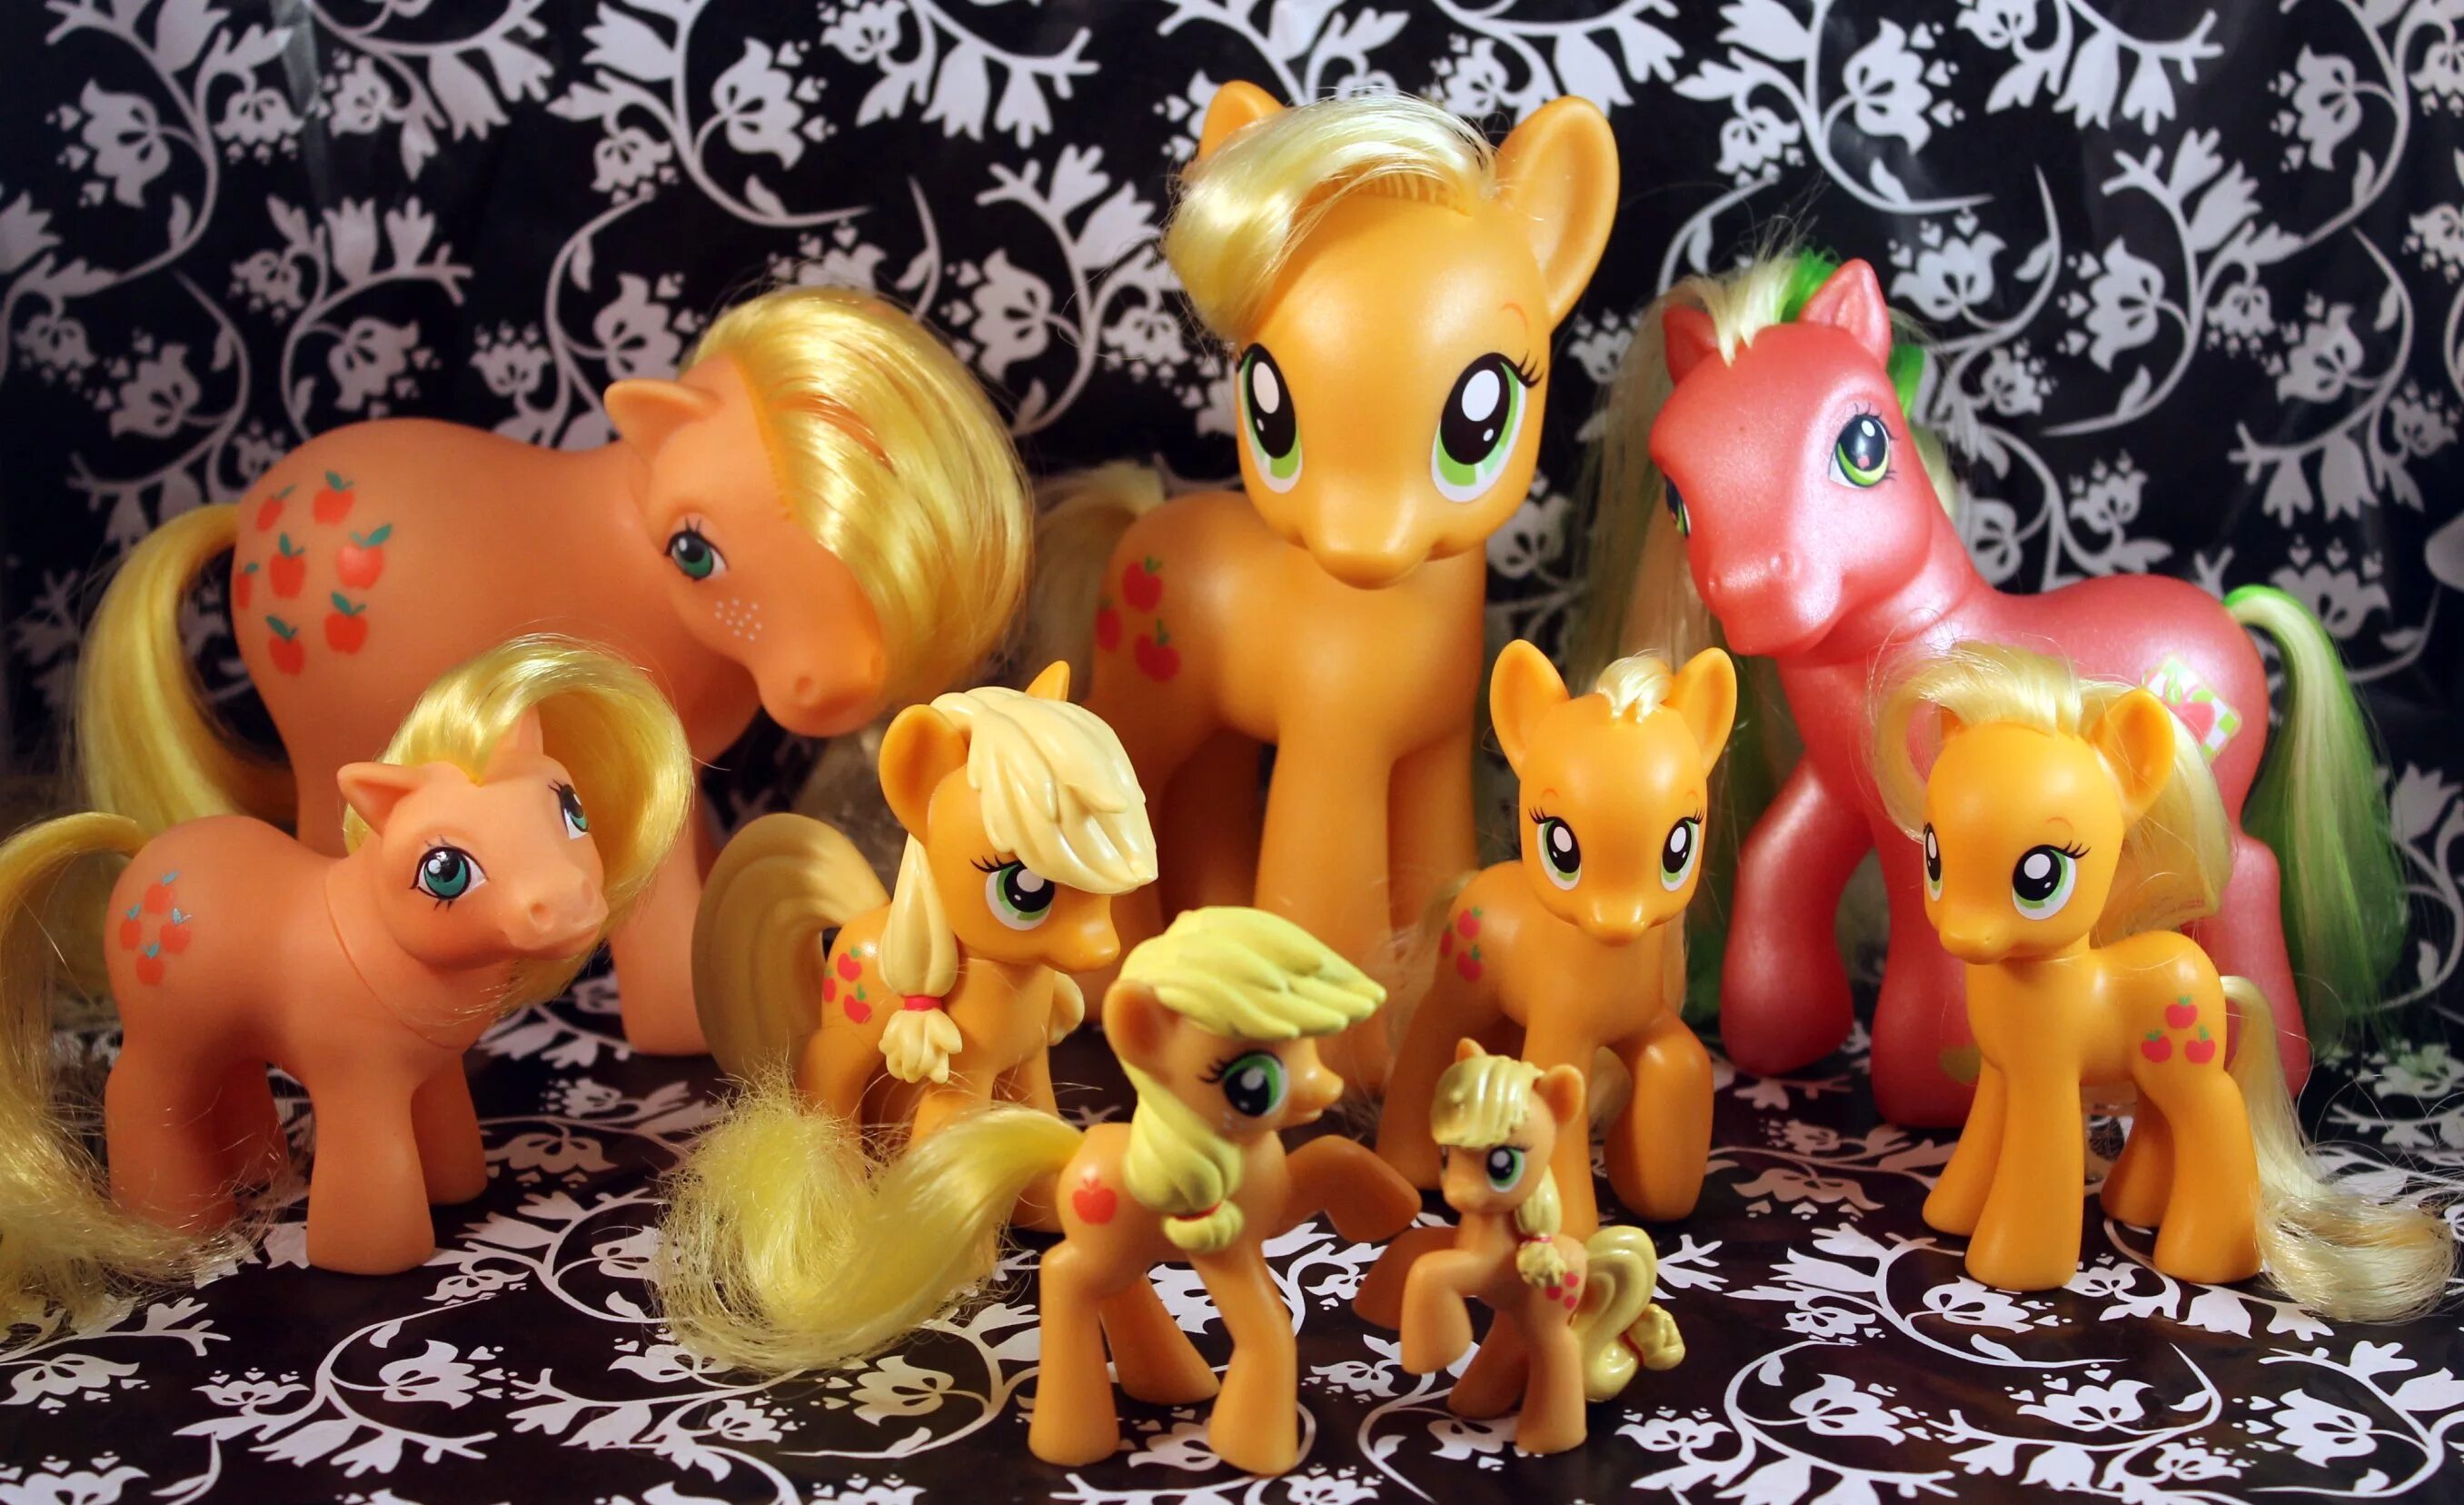 Май литл пони новое игрушки. My little Pony игрушки Эпплджек. Пони 5 поколение Эпплджек. Эпплджек игрушка пони Hasbro 2010. My little Pony 1 поколение игрушки.